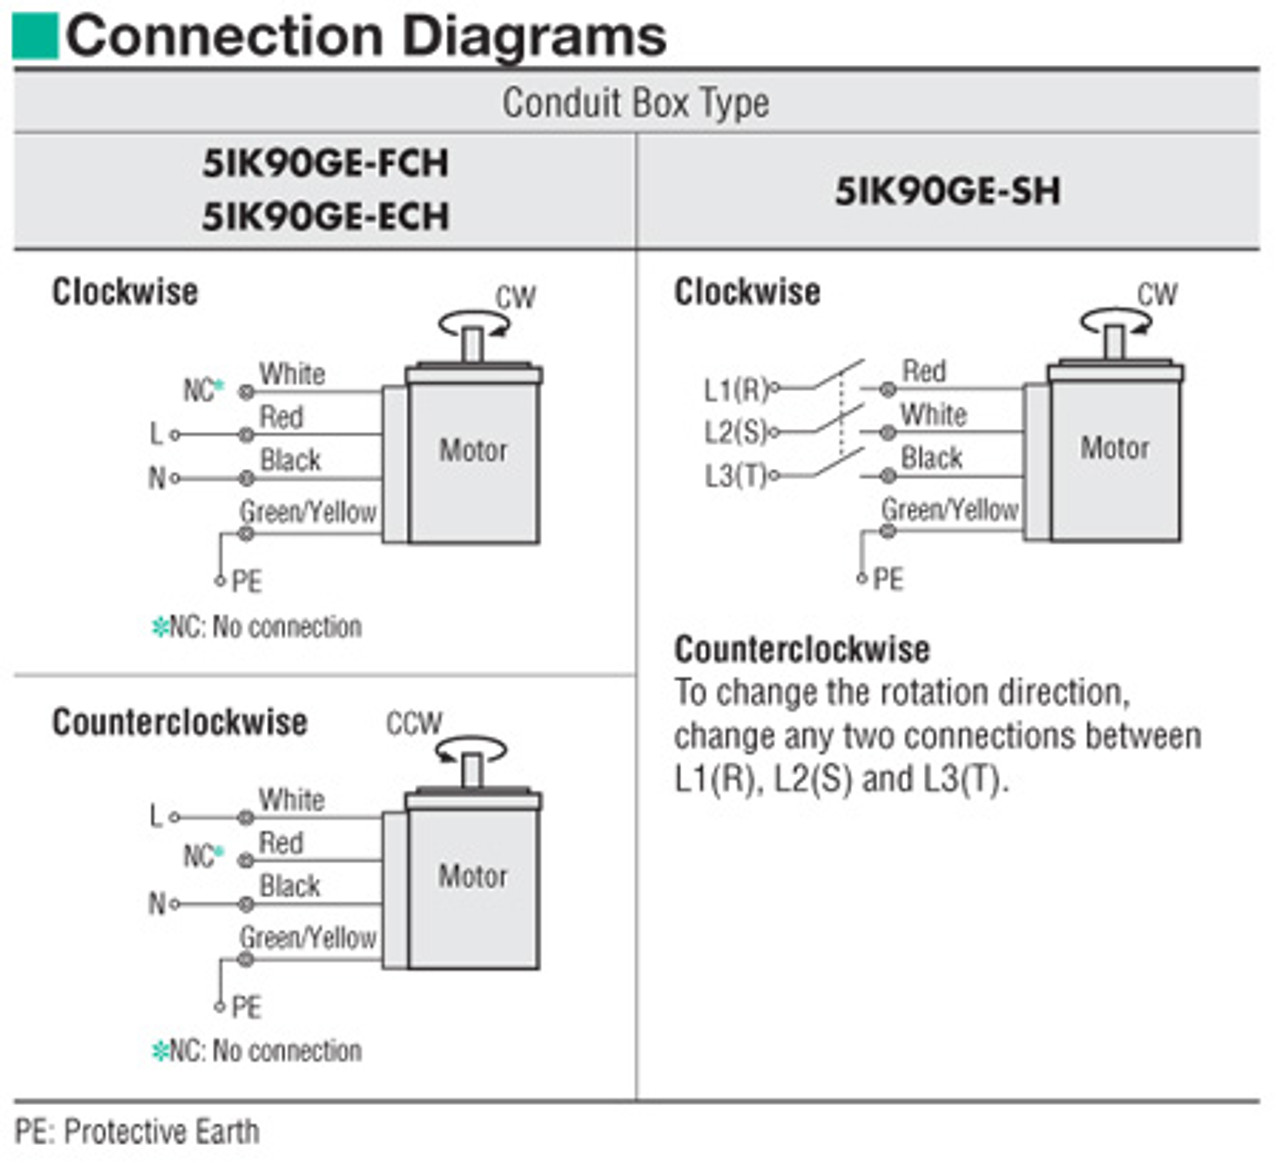 5IK90GE-FCH / 5GE36SA - Connection